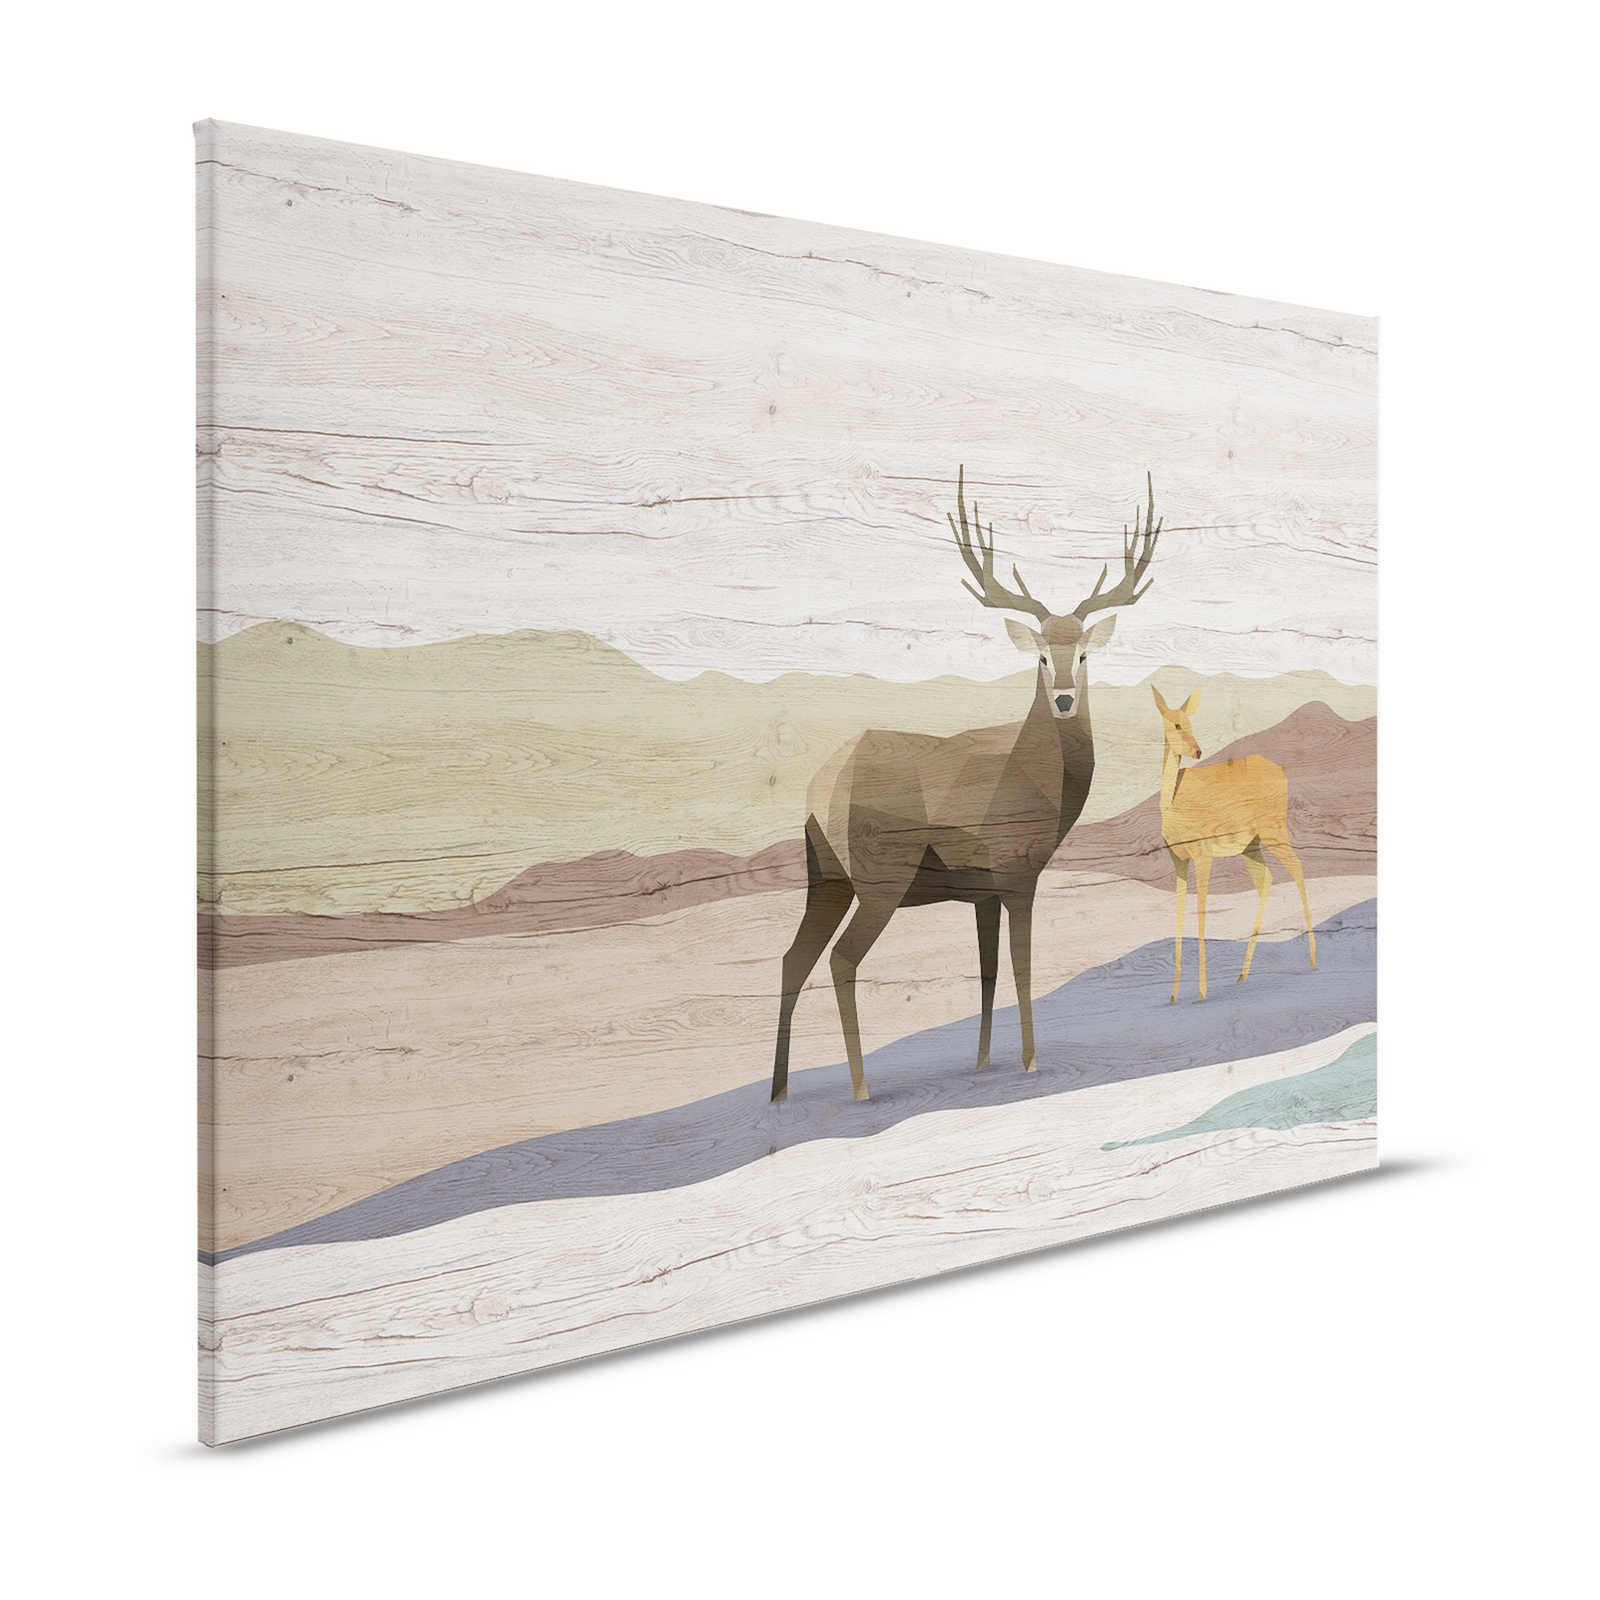 Yukon 2 - Tela dipinta con venature del legno, disegno di cervi e caprioli - 1,20 m x 0,80 m
